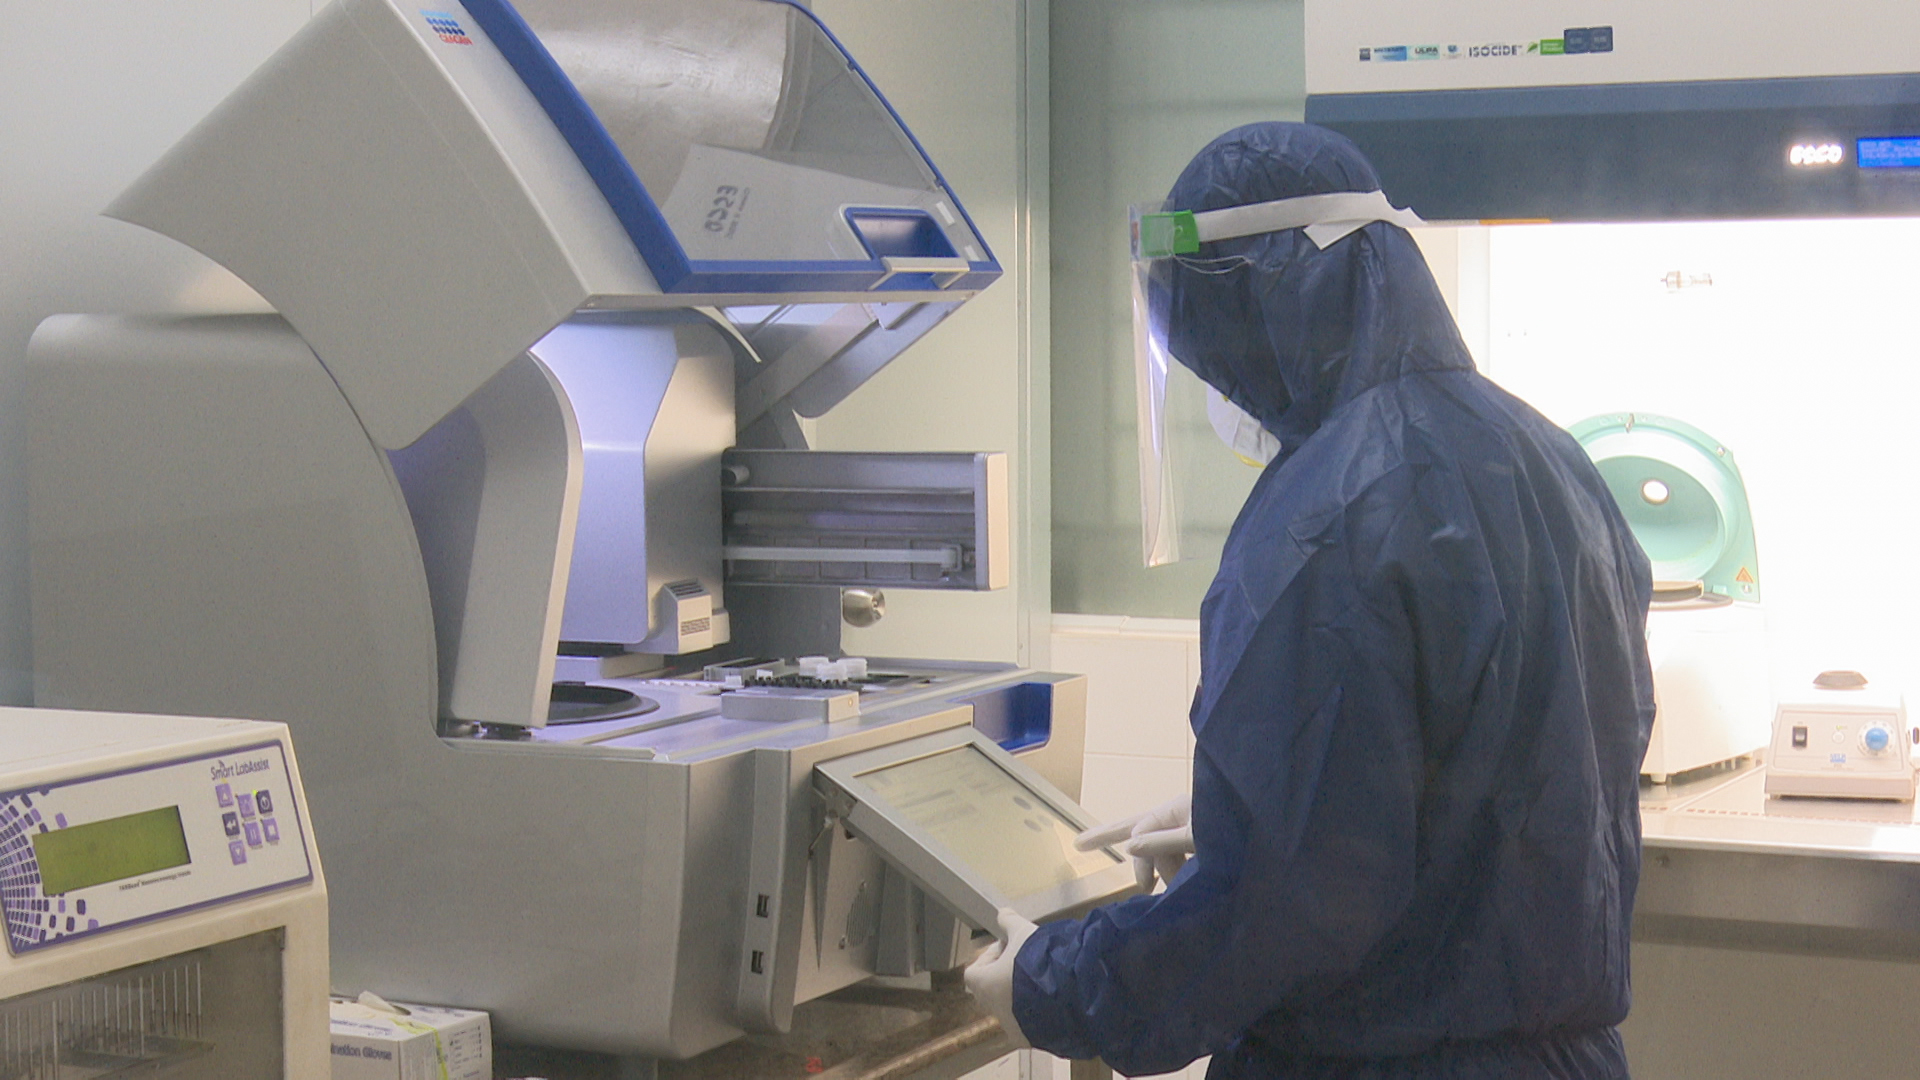 Đồng Nai chính thức ghi nhận ca nghi nhiễm Covid-19 đầu tiên trong khu công nghiệp